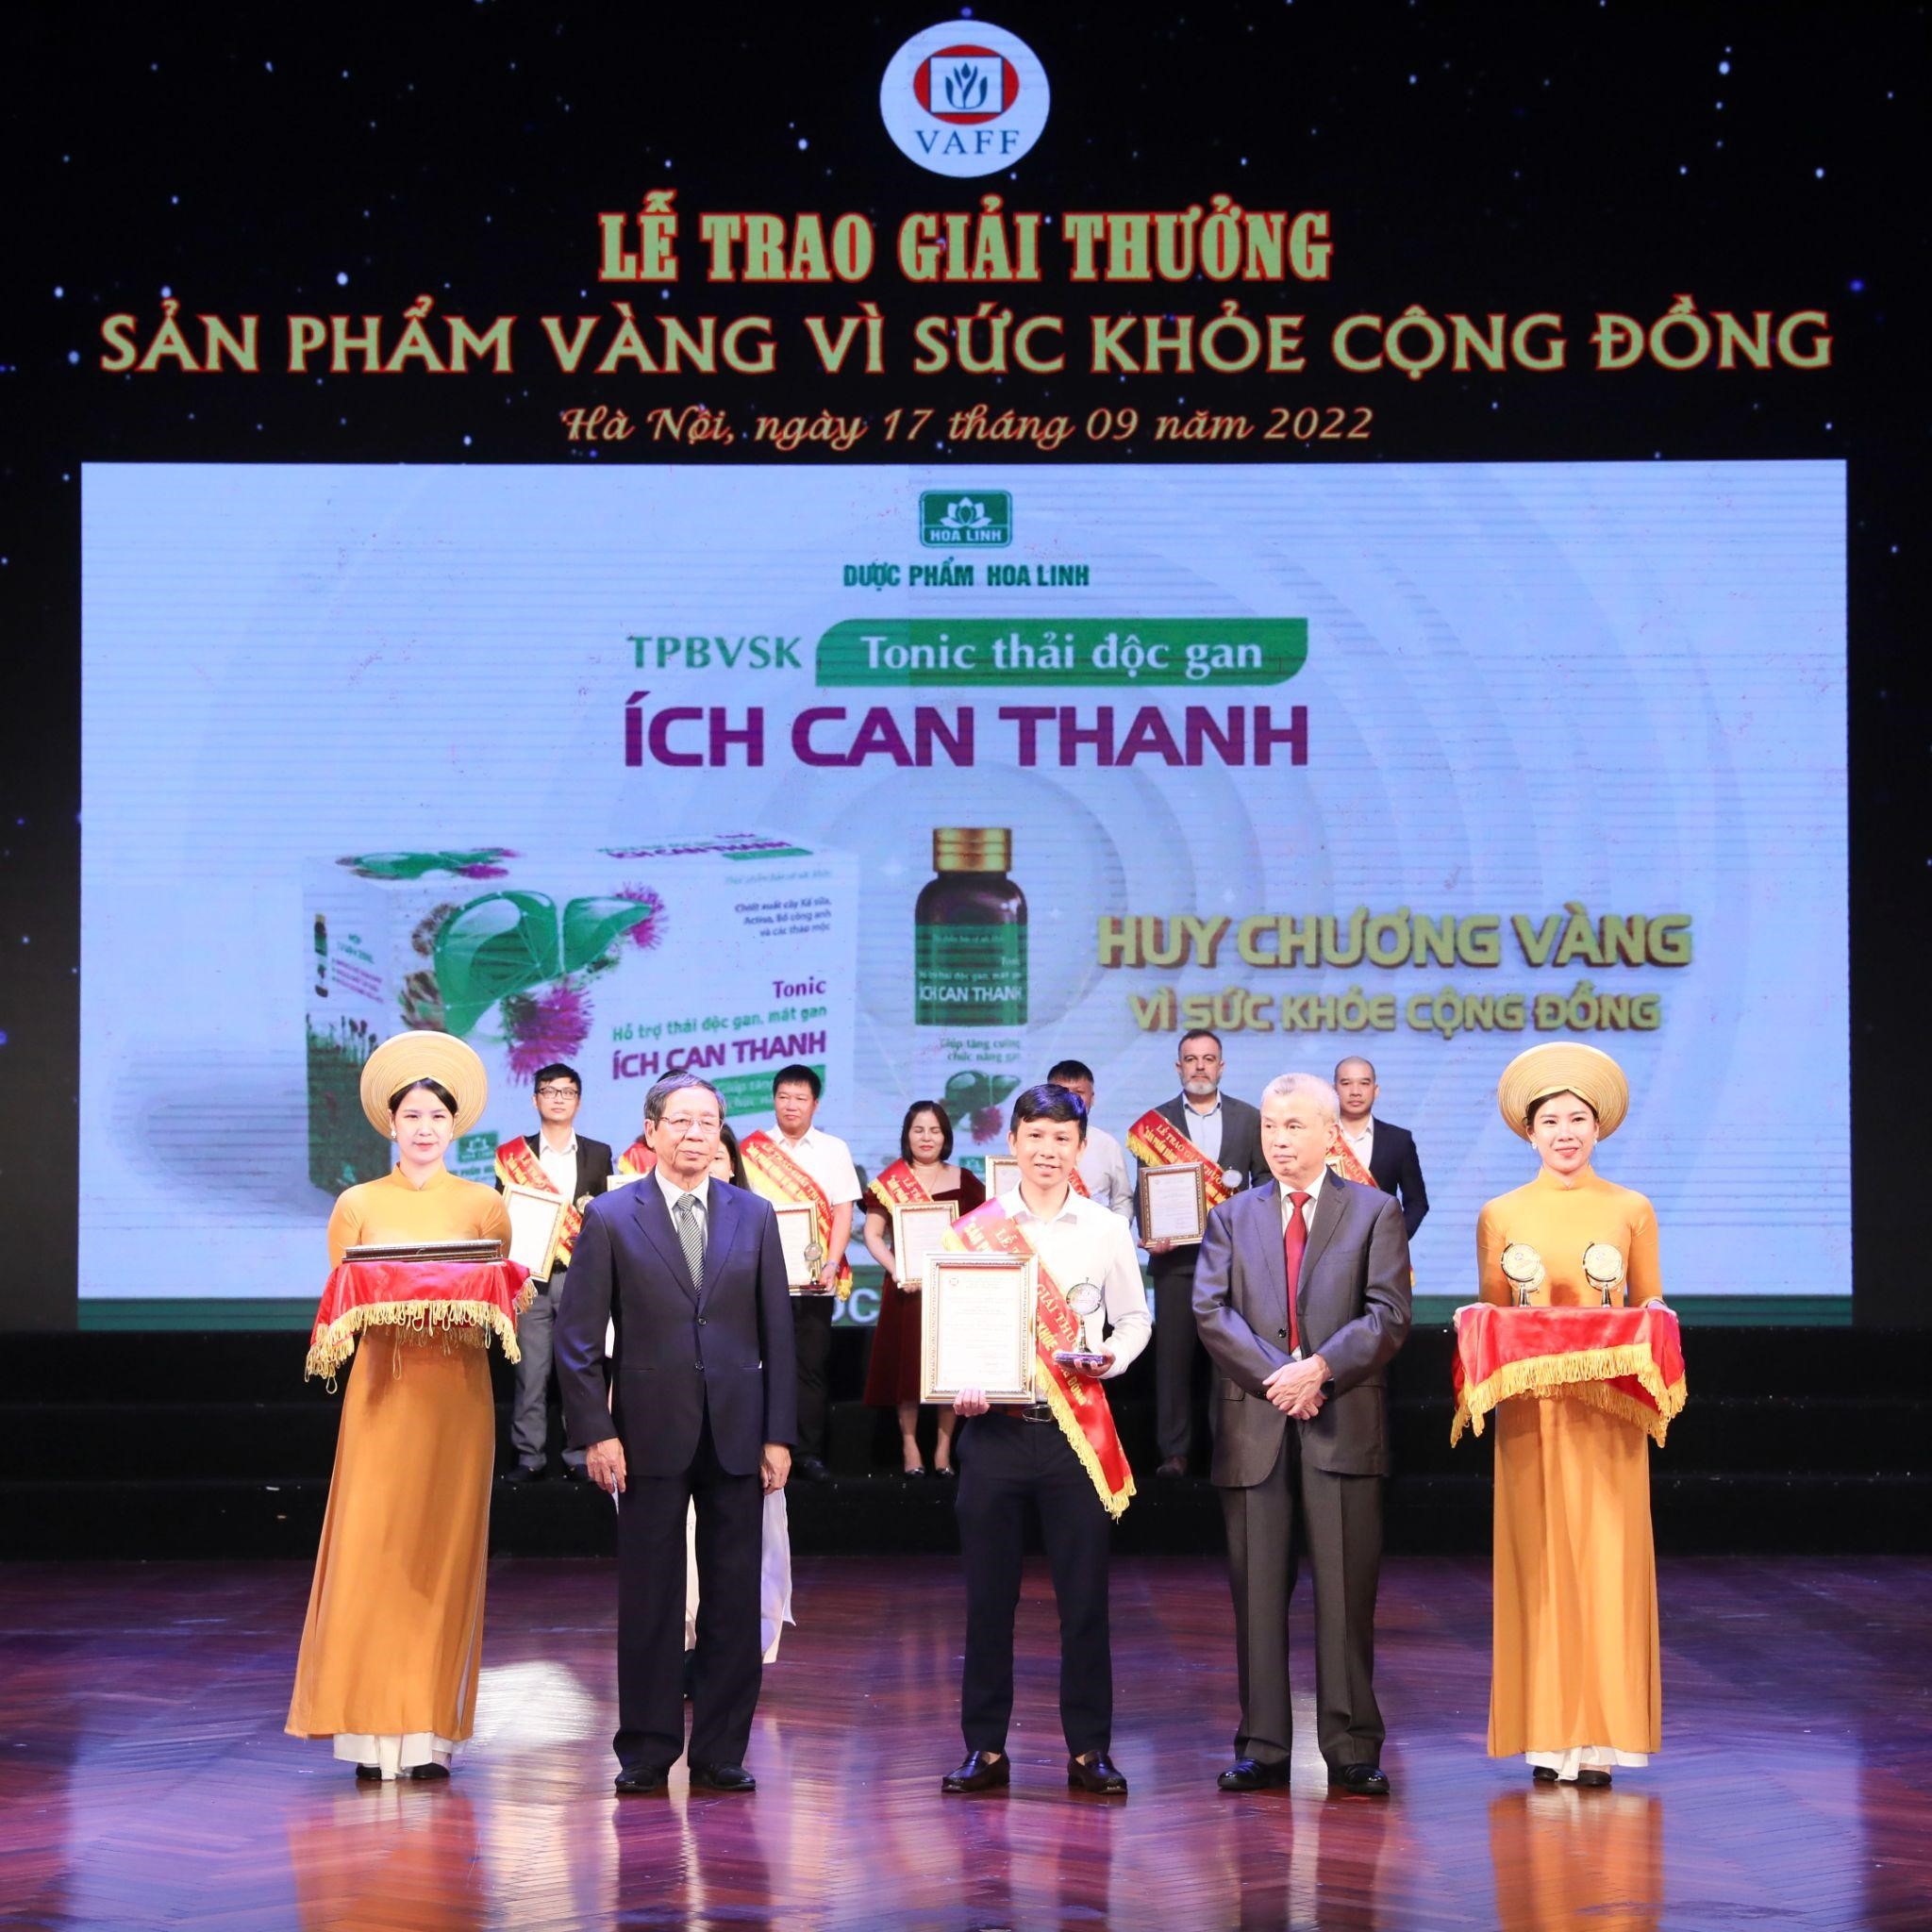 Đại diện nhãn hàng Tonic hỗ trợ thải độc gan Ích Can Thanh nhận giải “Huy chương vàng vì sức khỏe cộng đồng”